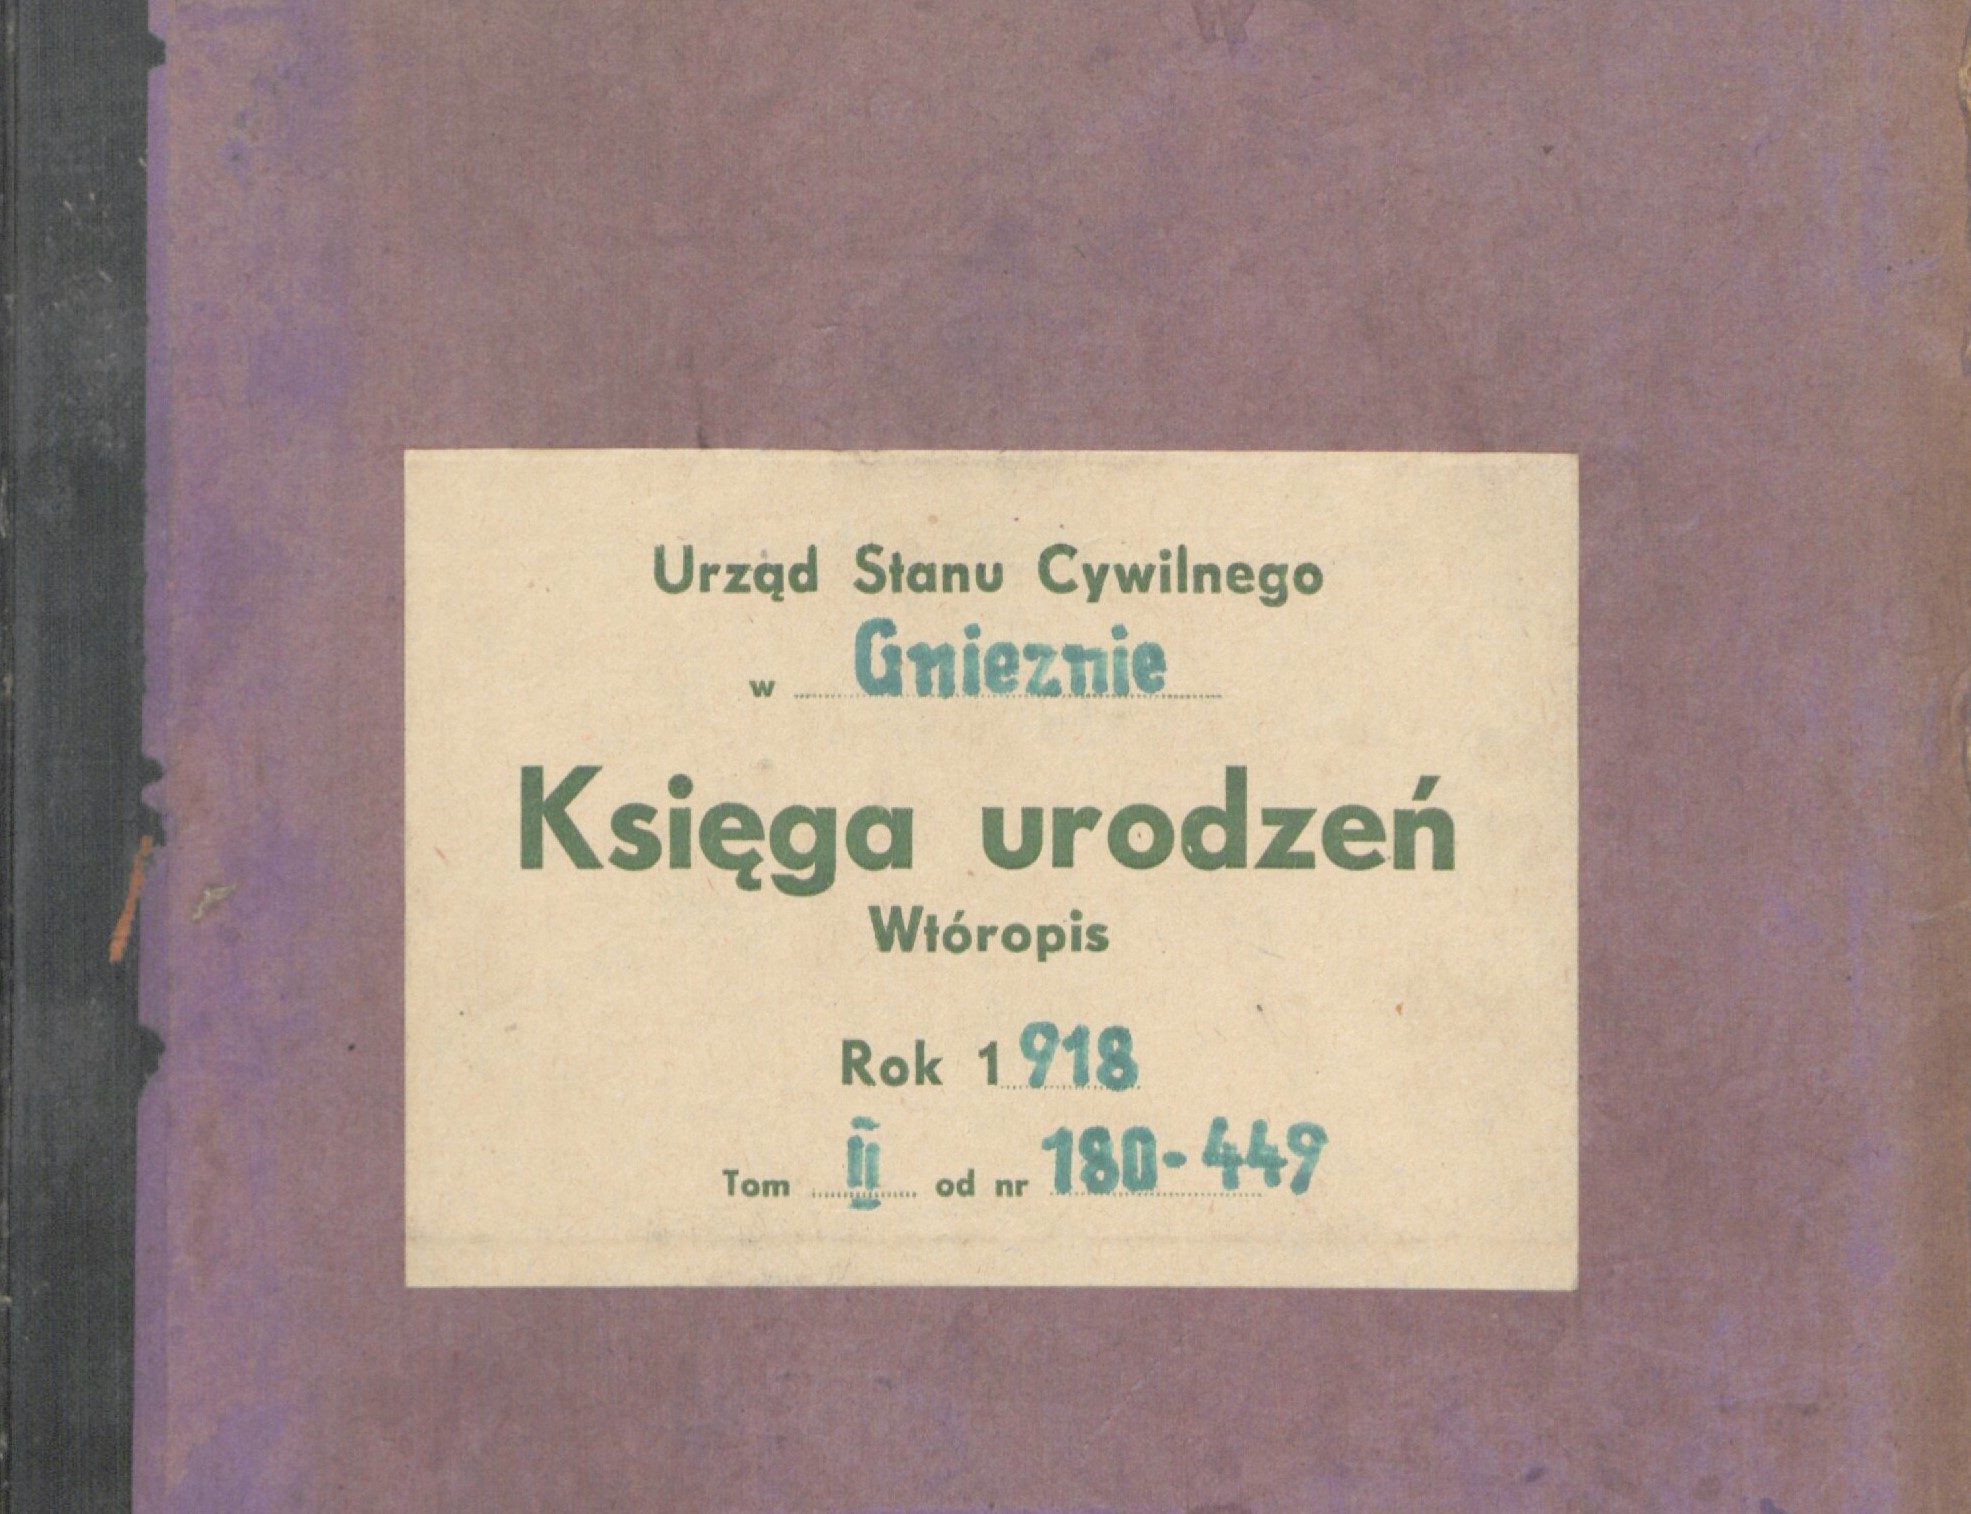 Okładka księgi w kolorze fioletowym z zadrukowaną nalepką papierową.